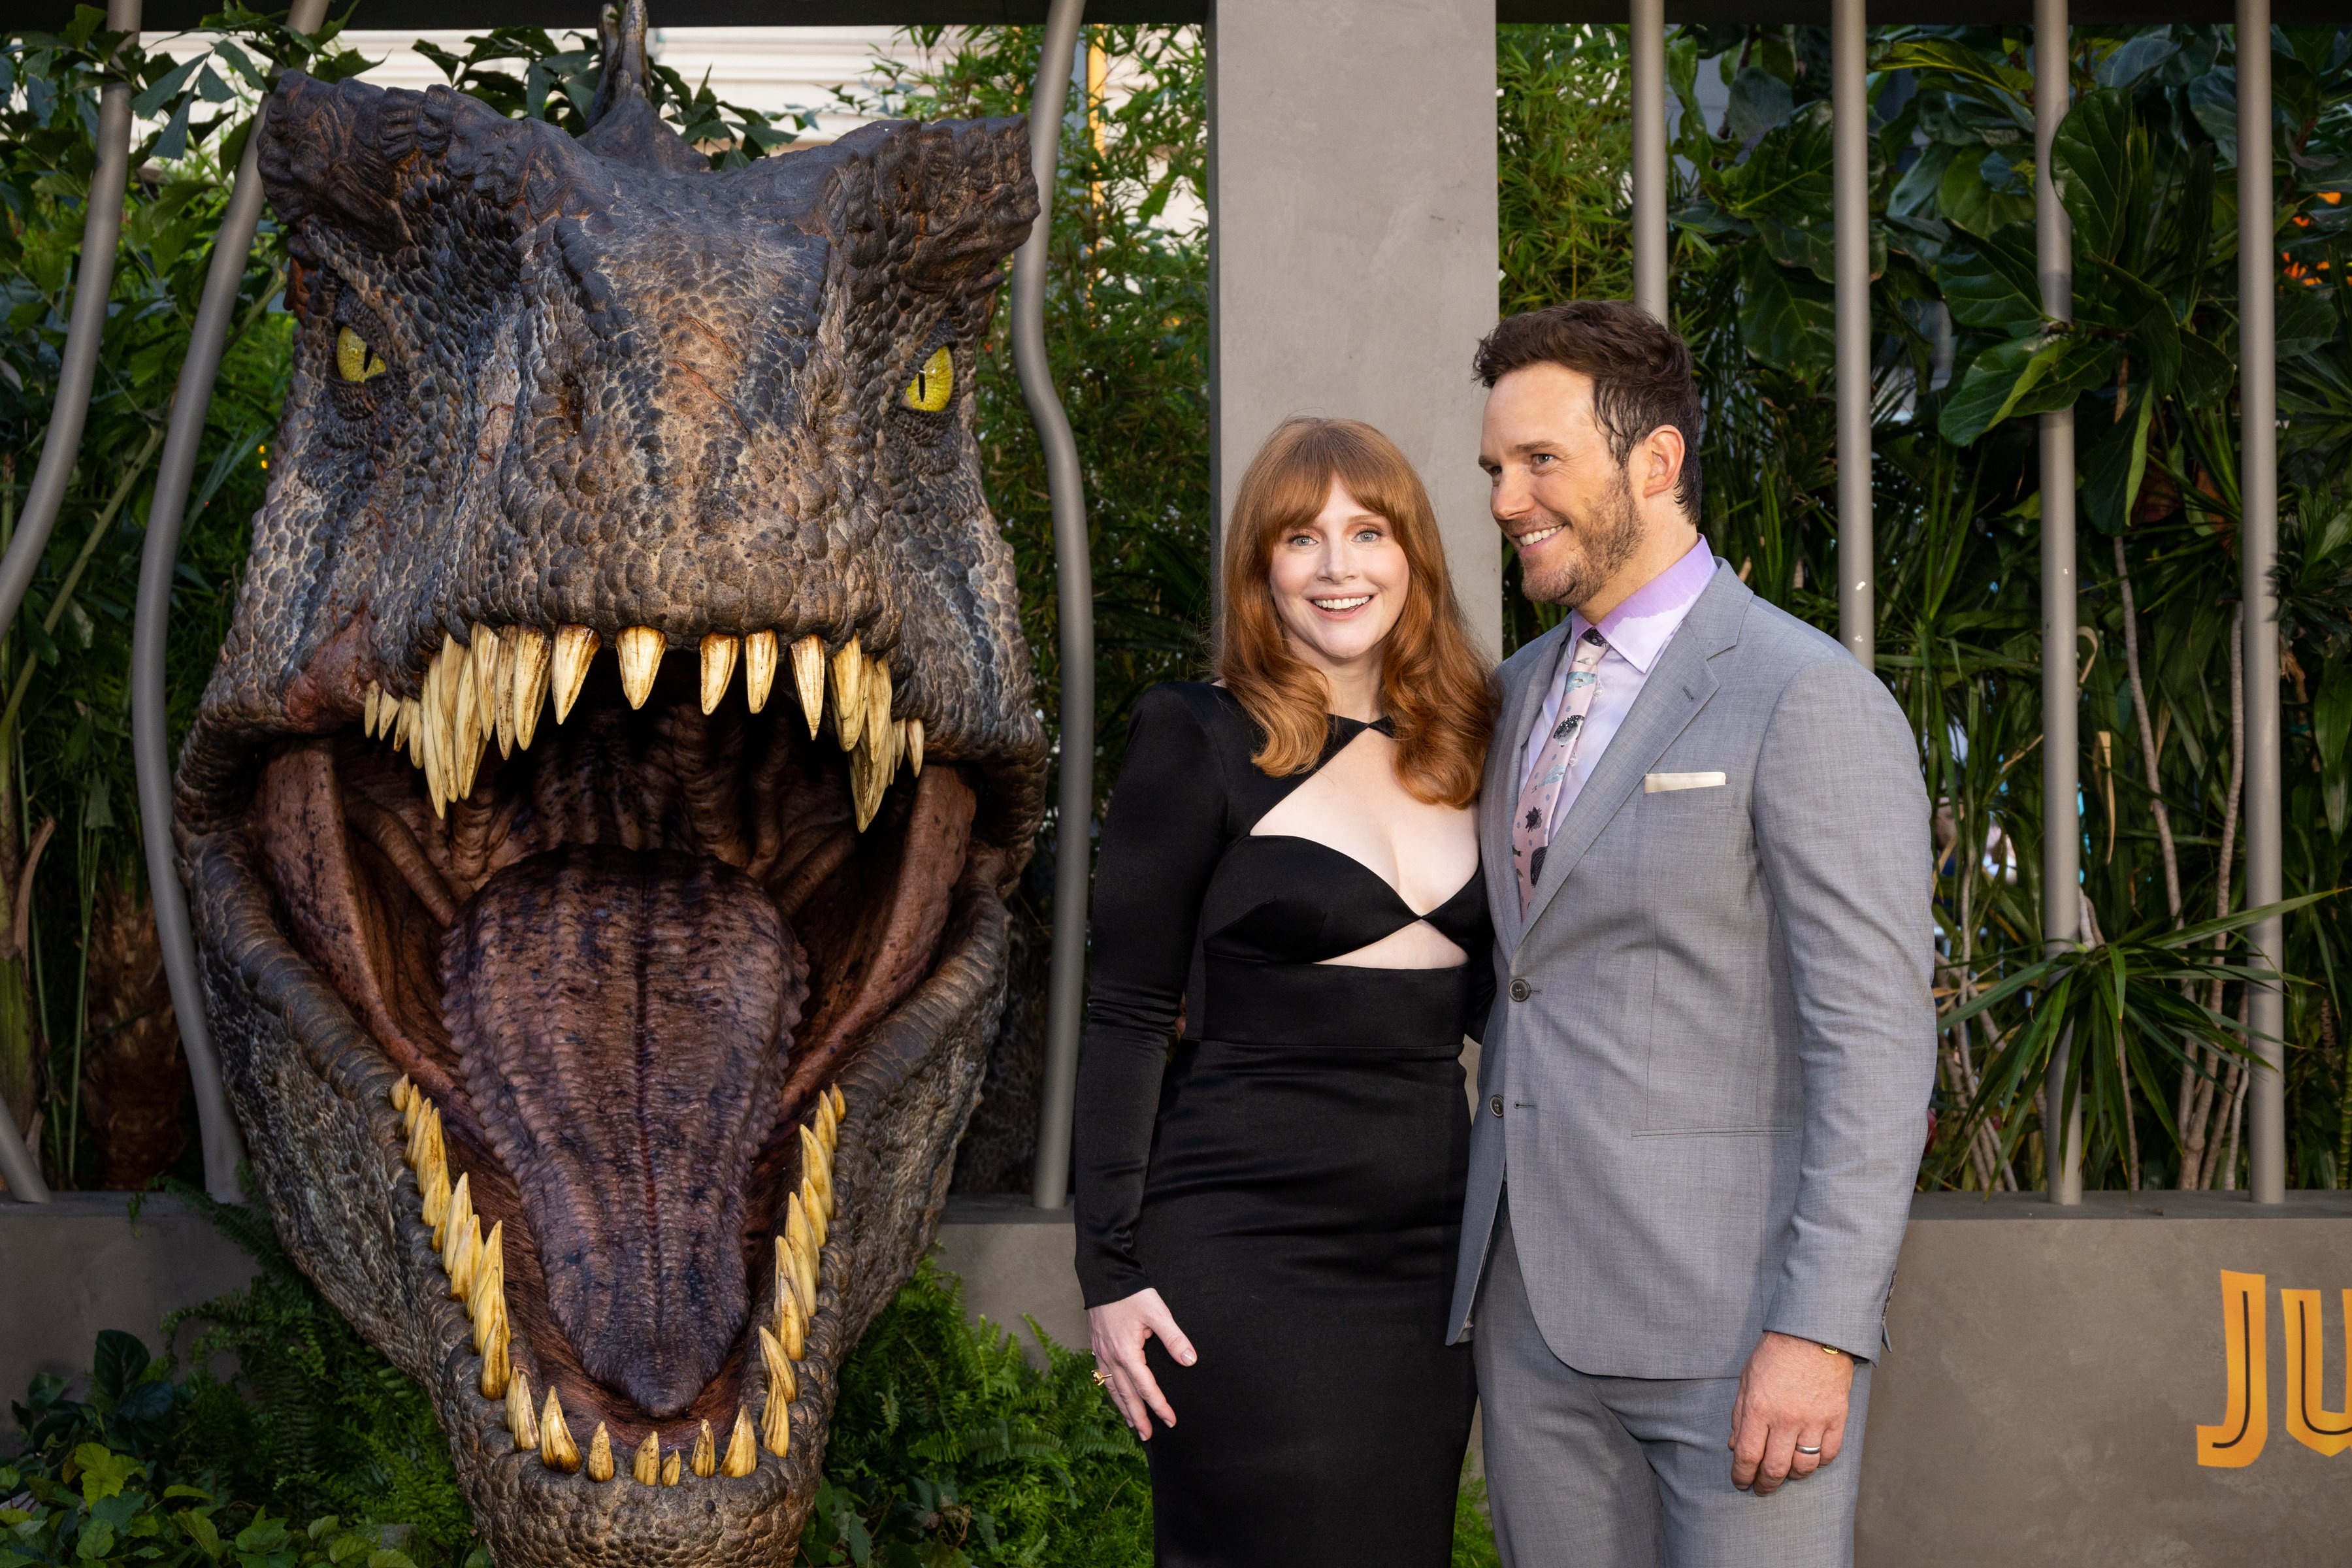 ‘Jurassic World’: Bryce Dallas Howard Was Paid ‘So Much Less’ Than Co-Star Chris Pratt